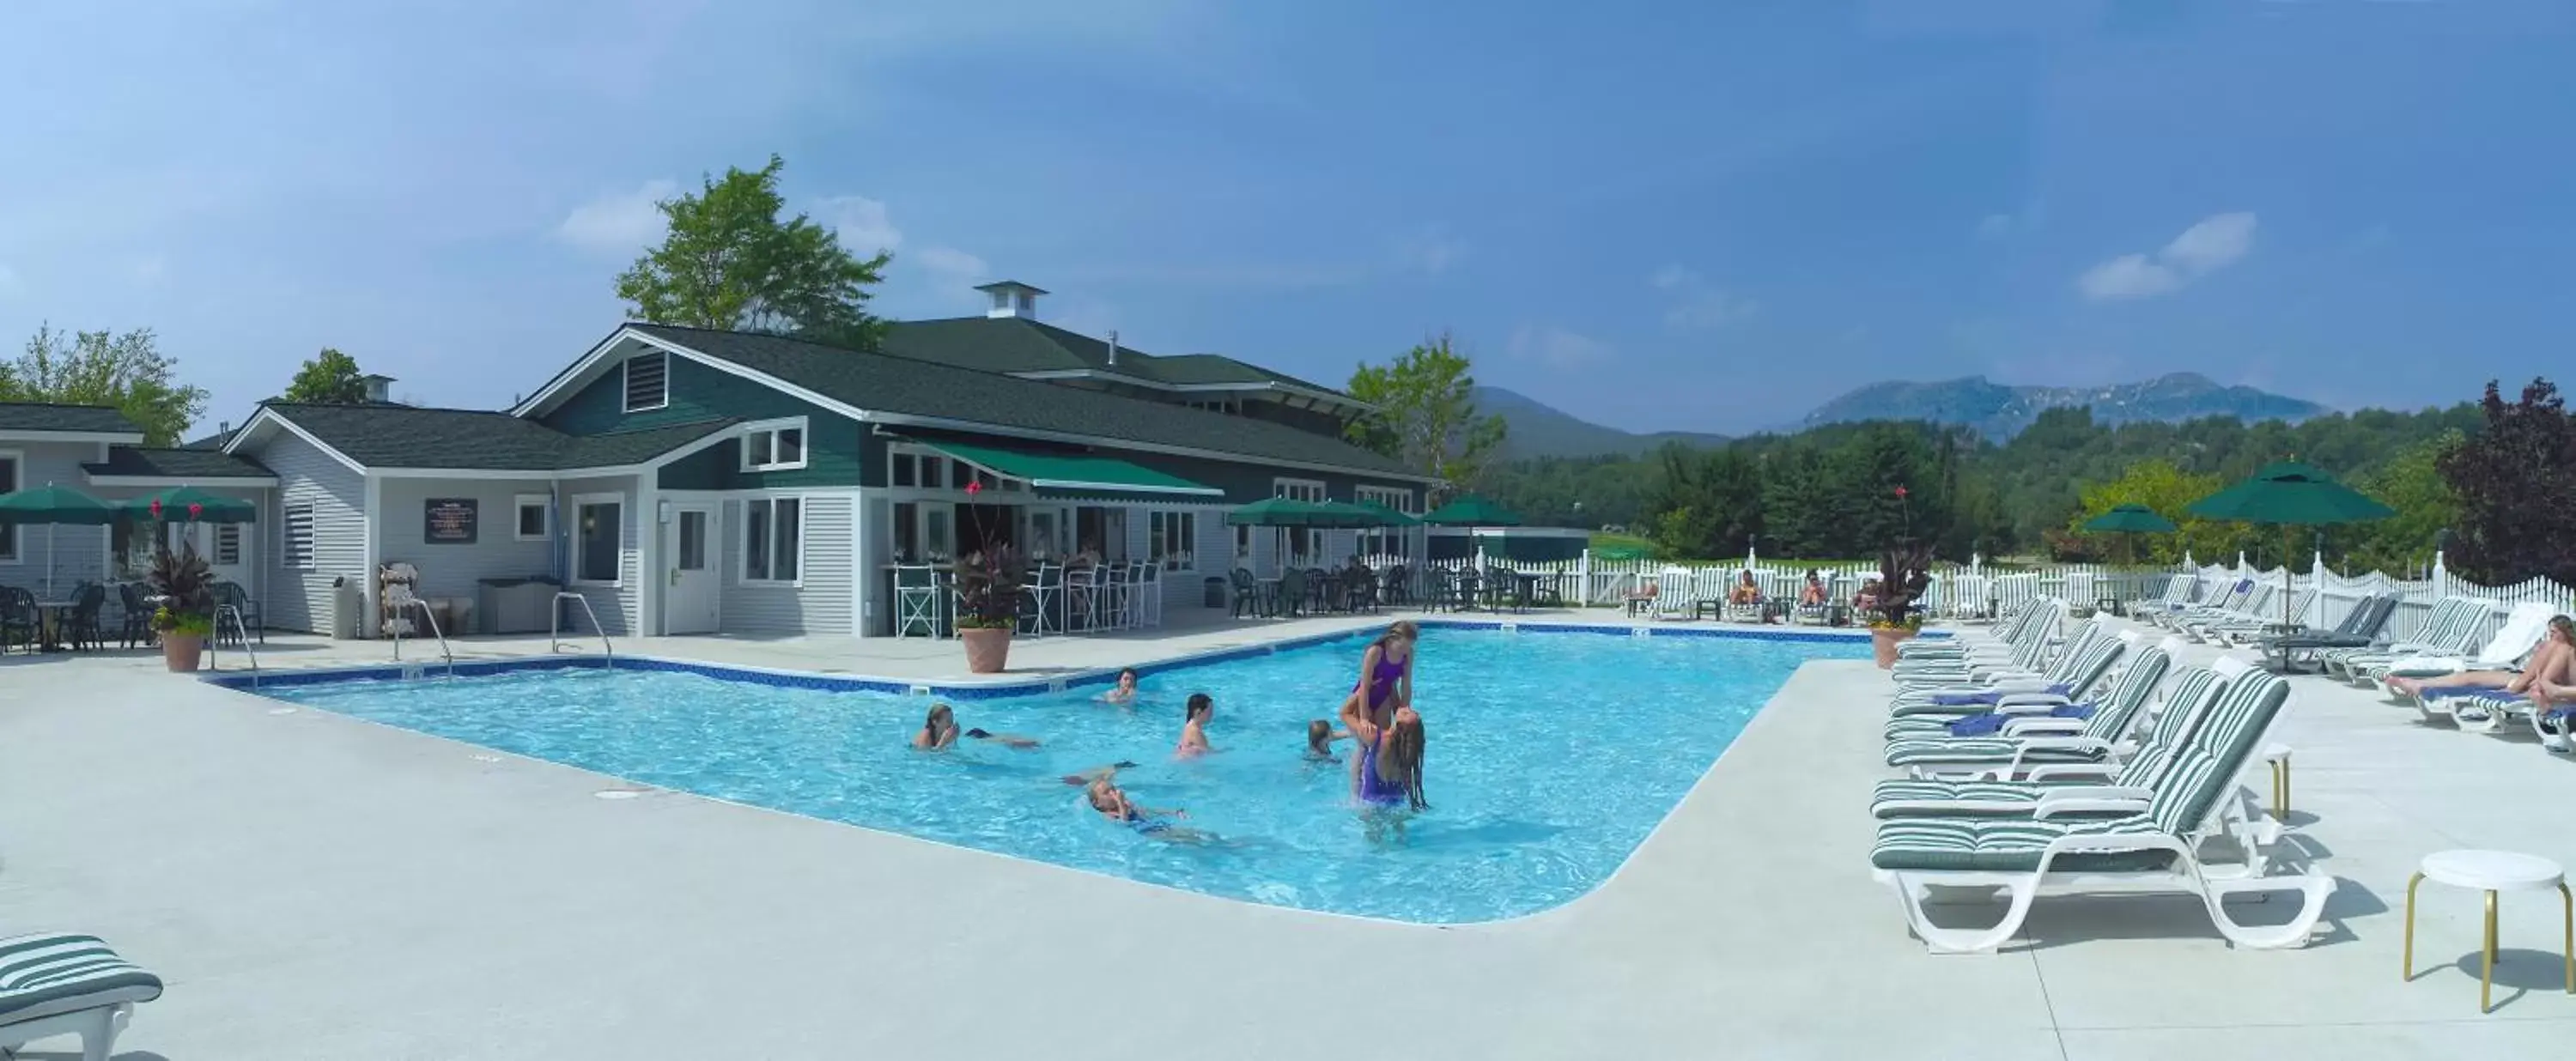 Pool view, Swimming Pool in Stoweflake Mountain Resort & Spa